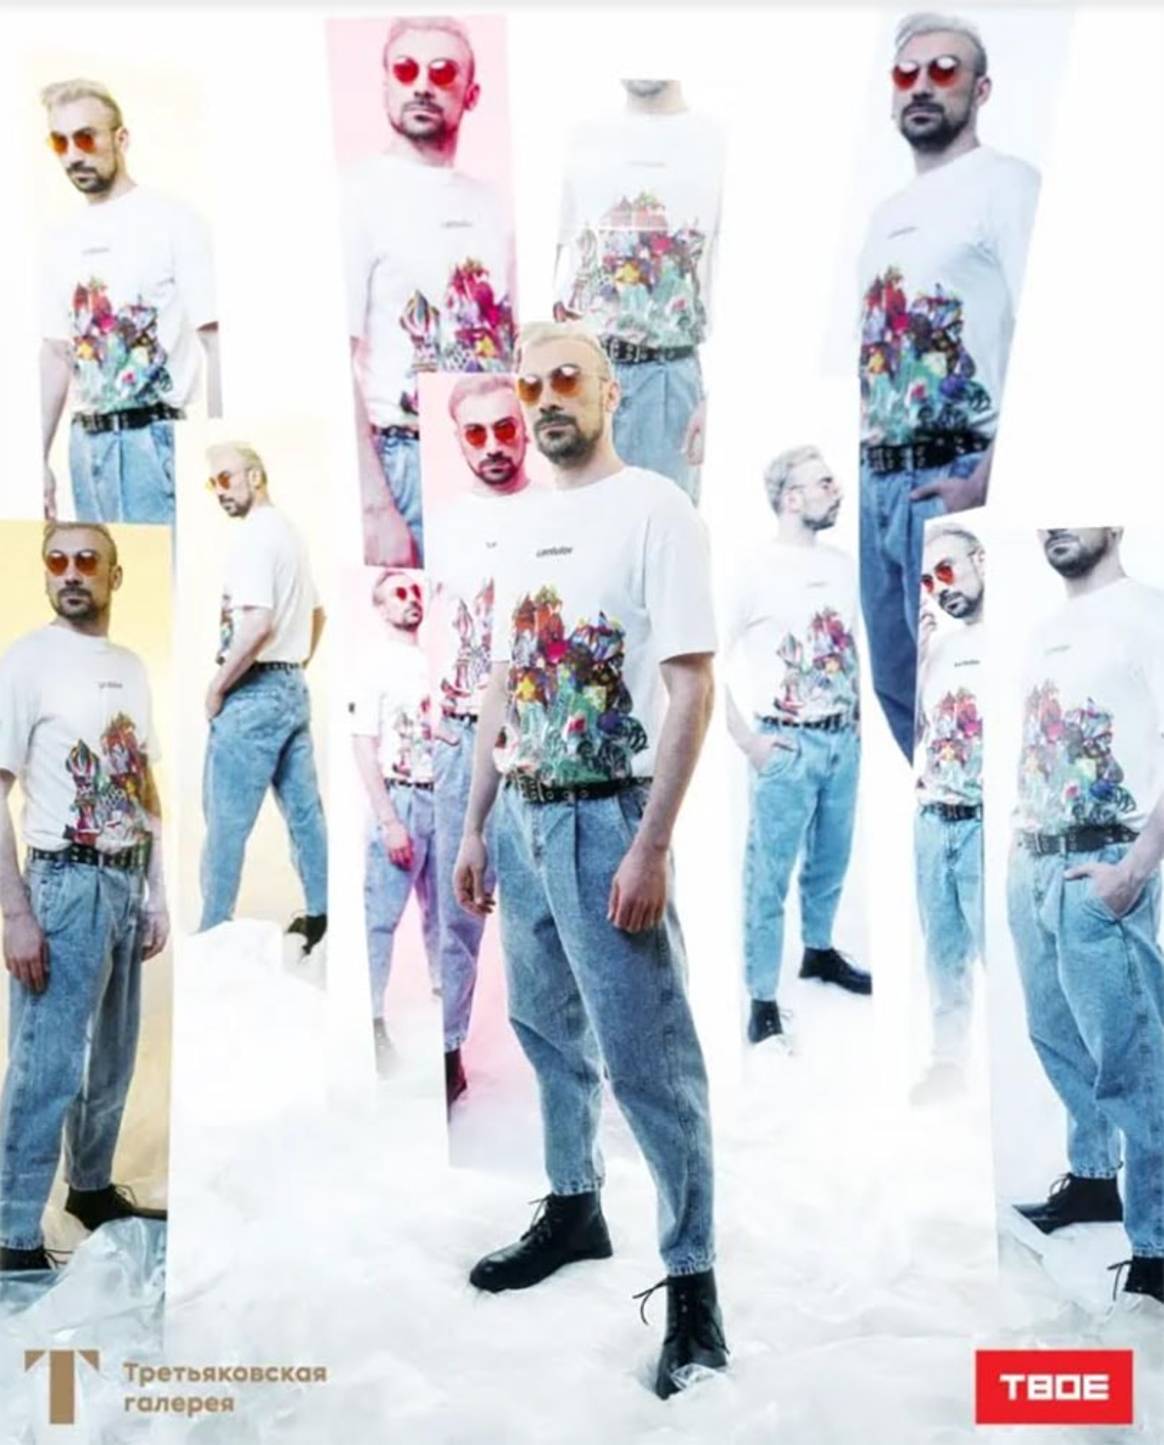 "Твое искусство": Третьяковская галерея выпустила коллекцию одежды с брендом "Твое"